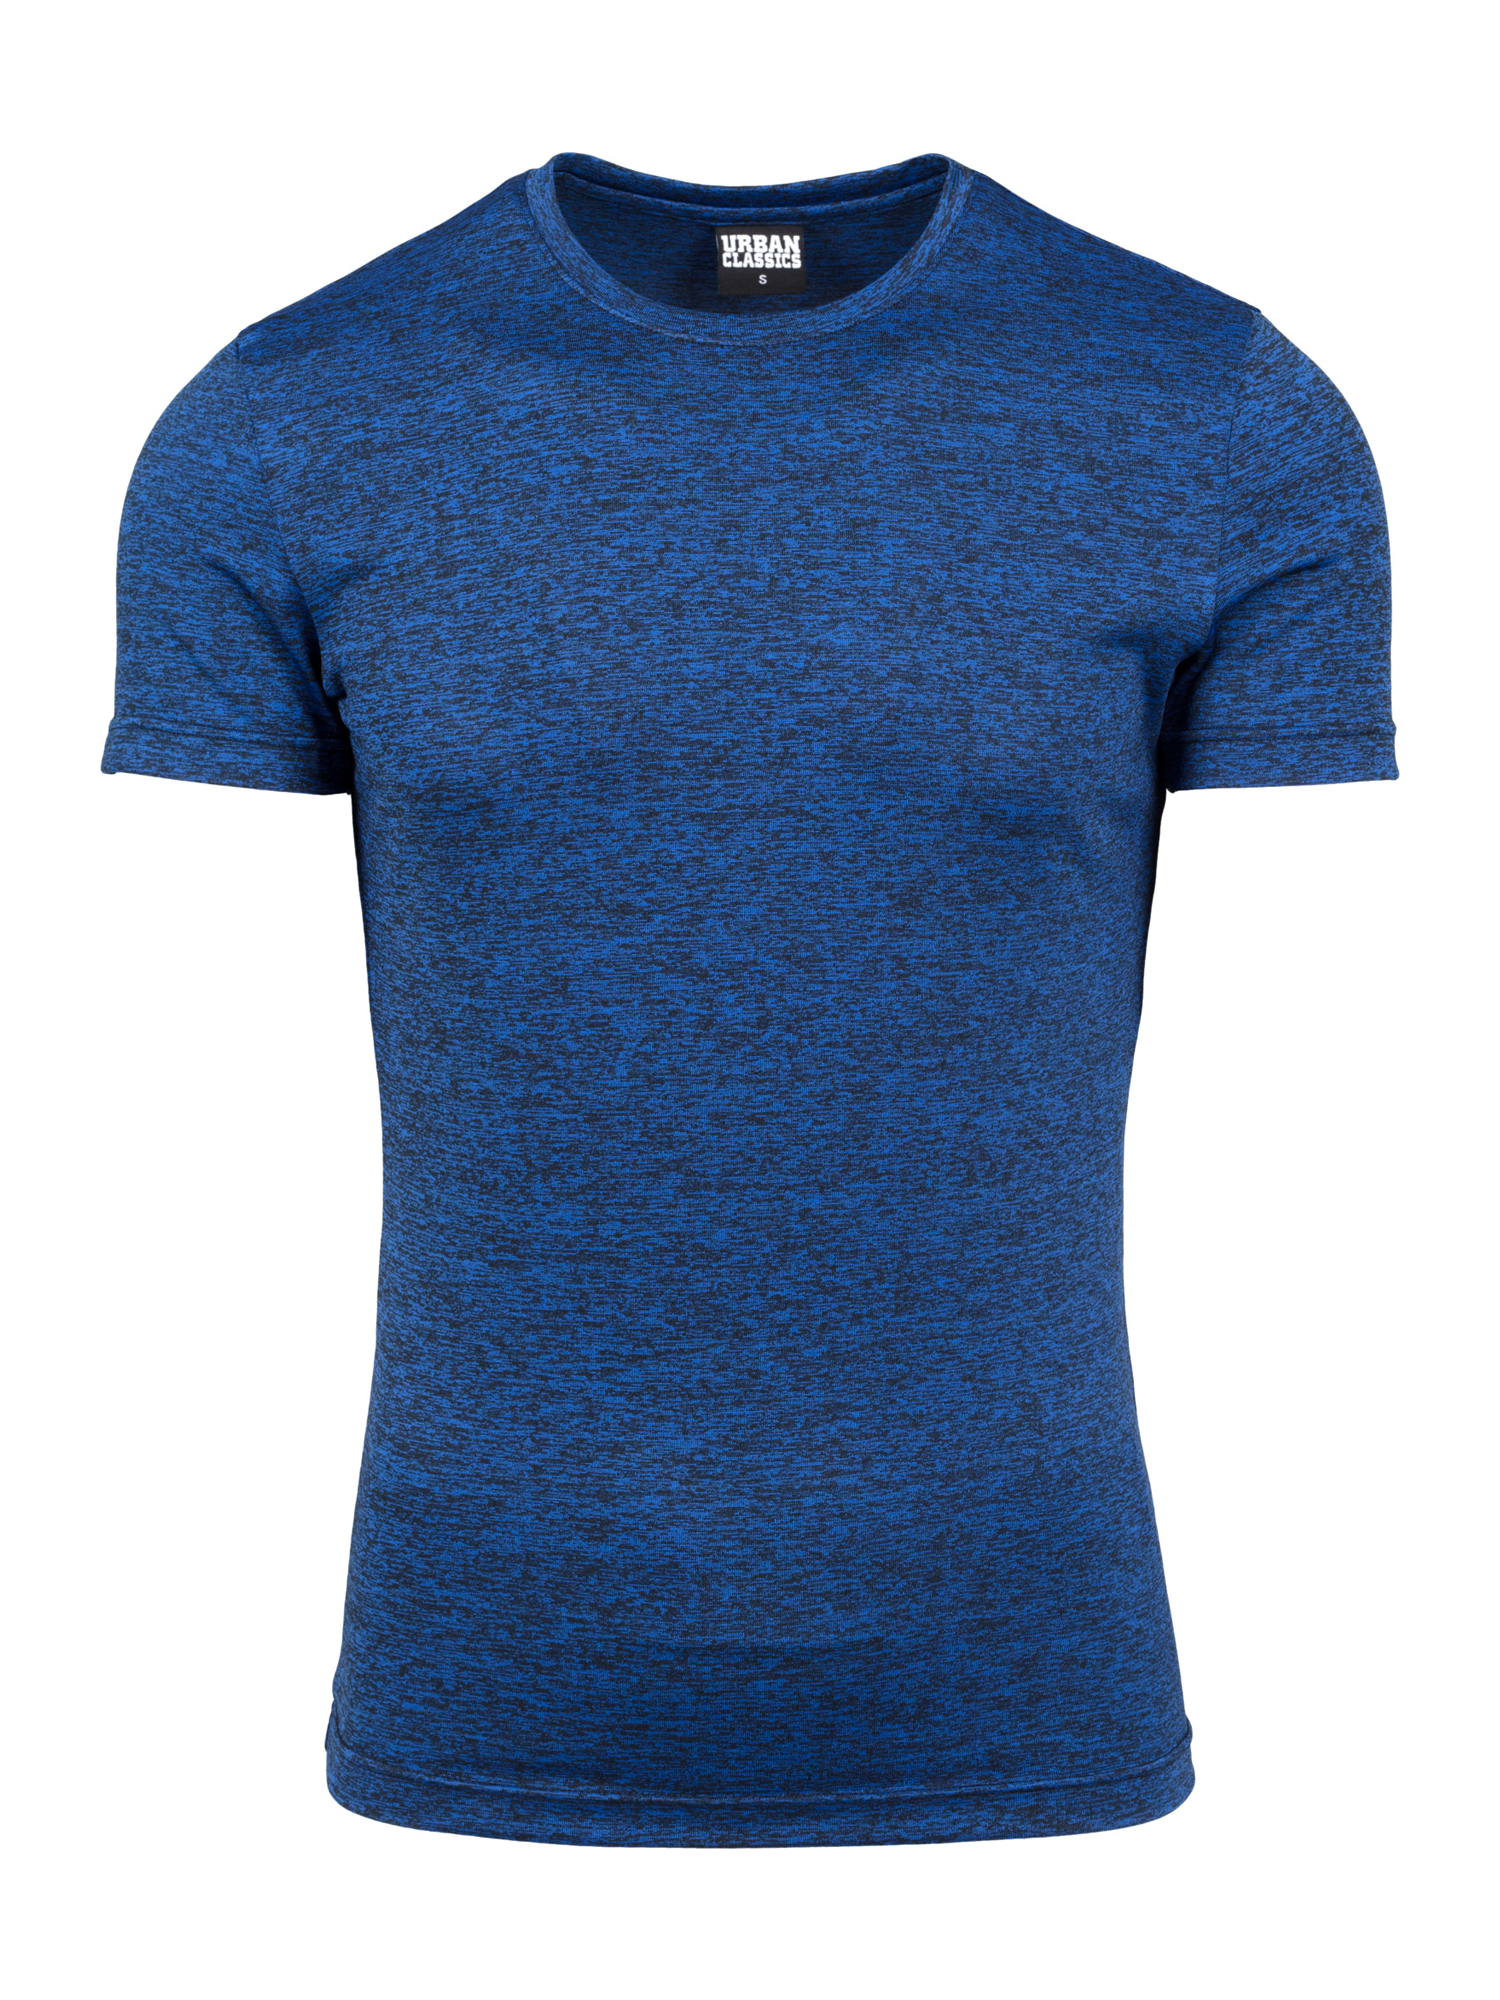 Odzież Mężczyźni Urban Classics Koszulka Active w kolorze Granatowym 